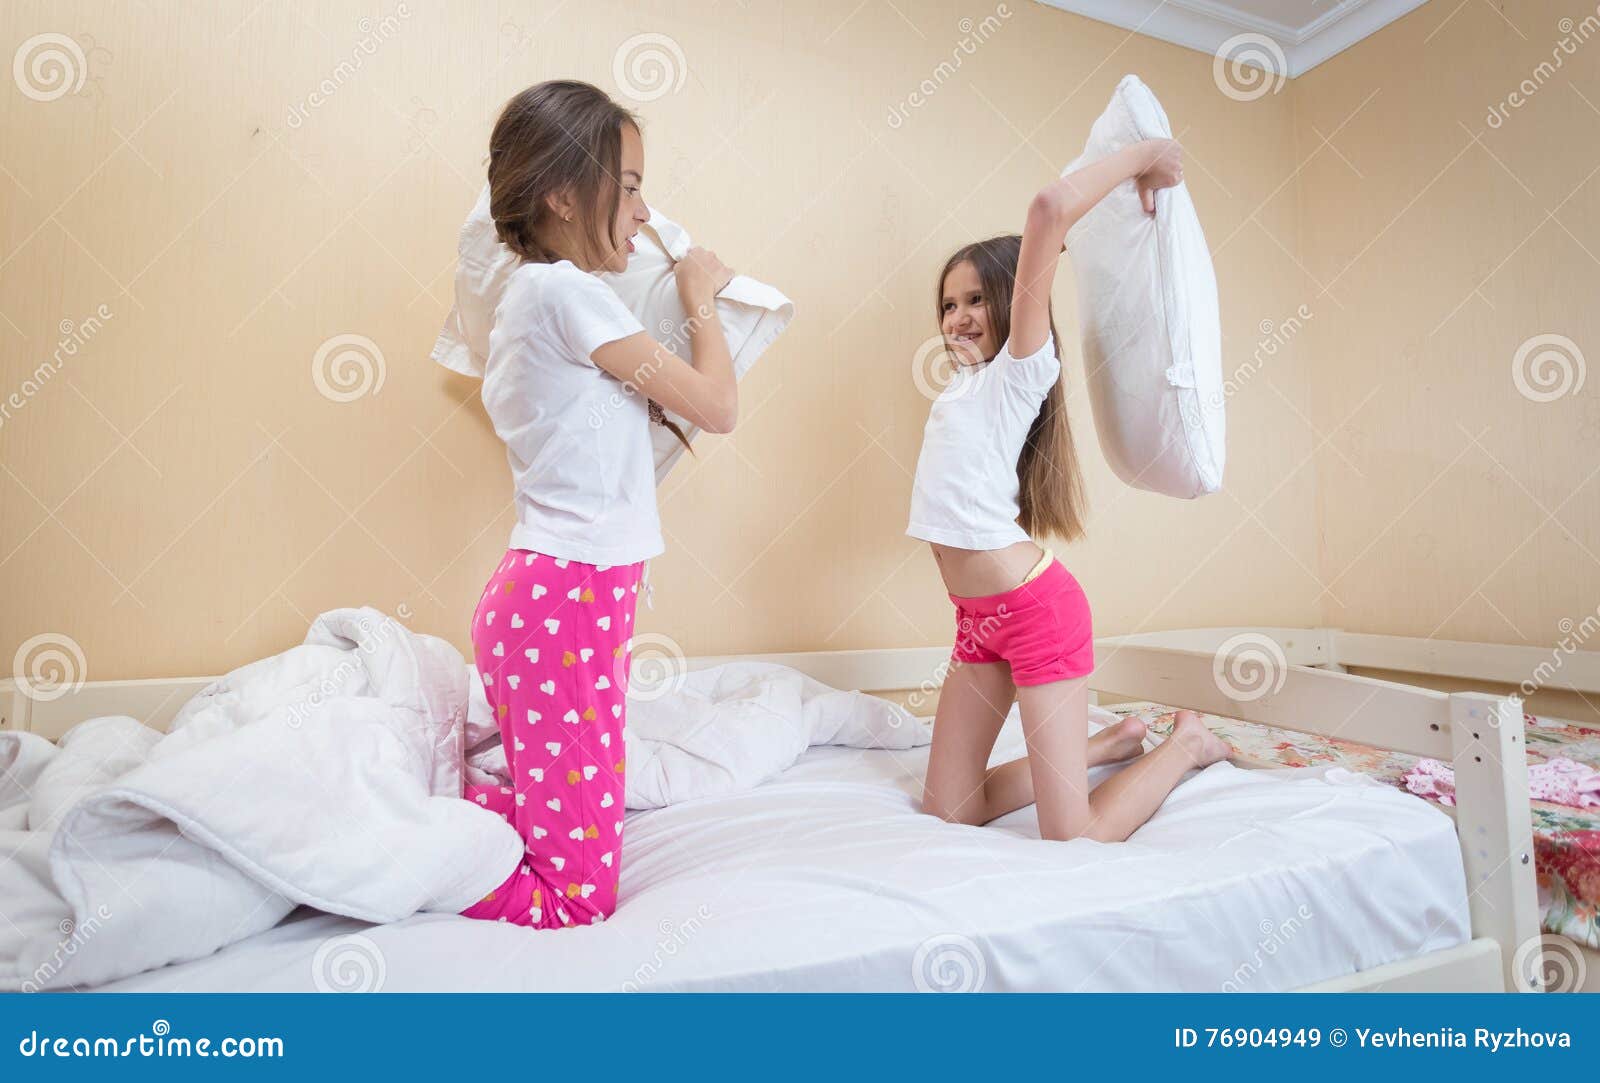 Сестры в пижамах кровать. Пижама для подростка девочки. Сестра в пижаме. Кровать для девочки 12 лет. Брат пришел к сестре в постель